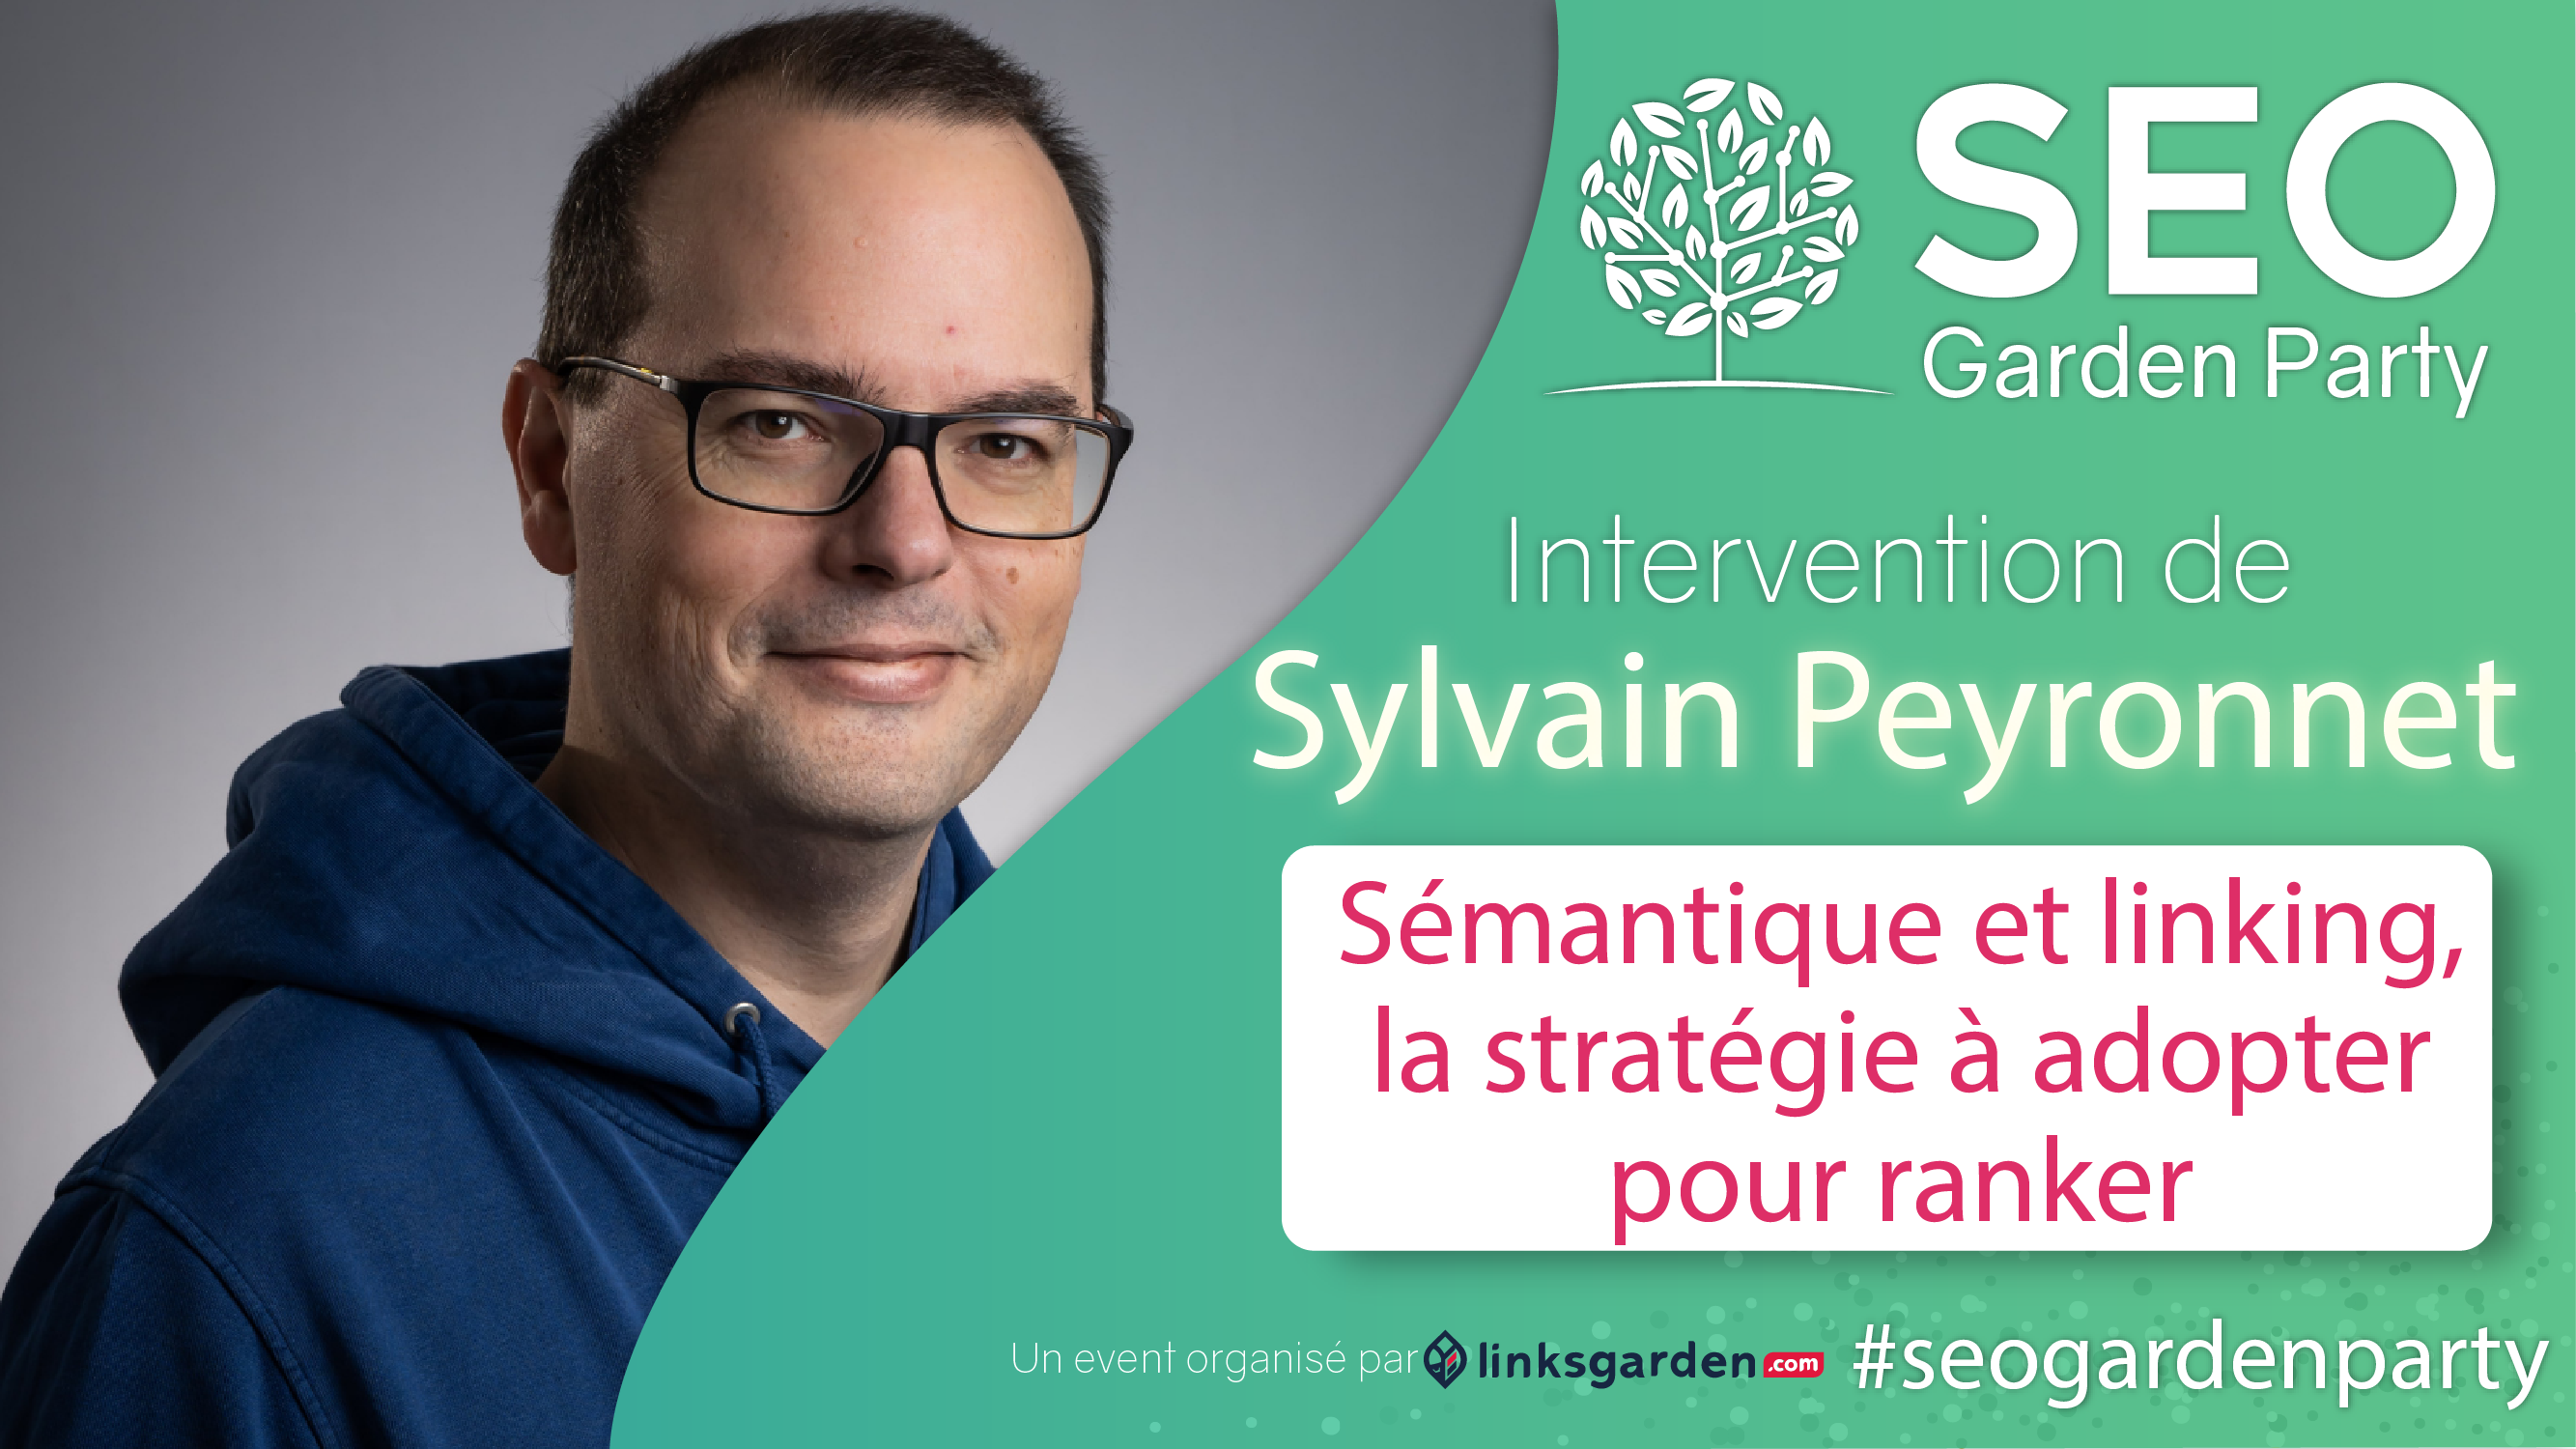 Sylvain Peyronnet seo garden party par linksgarden